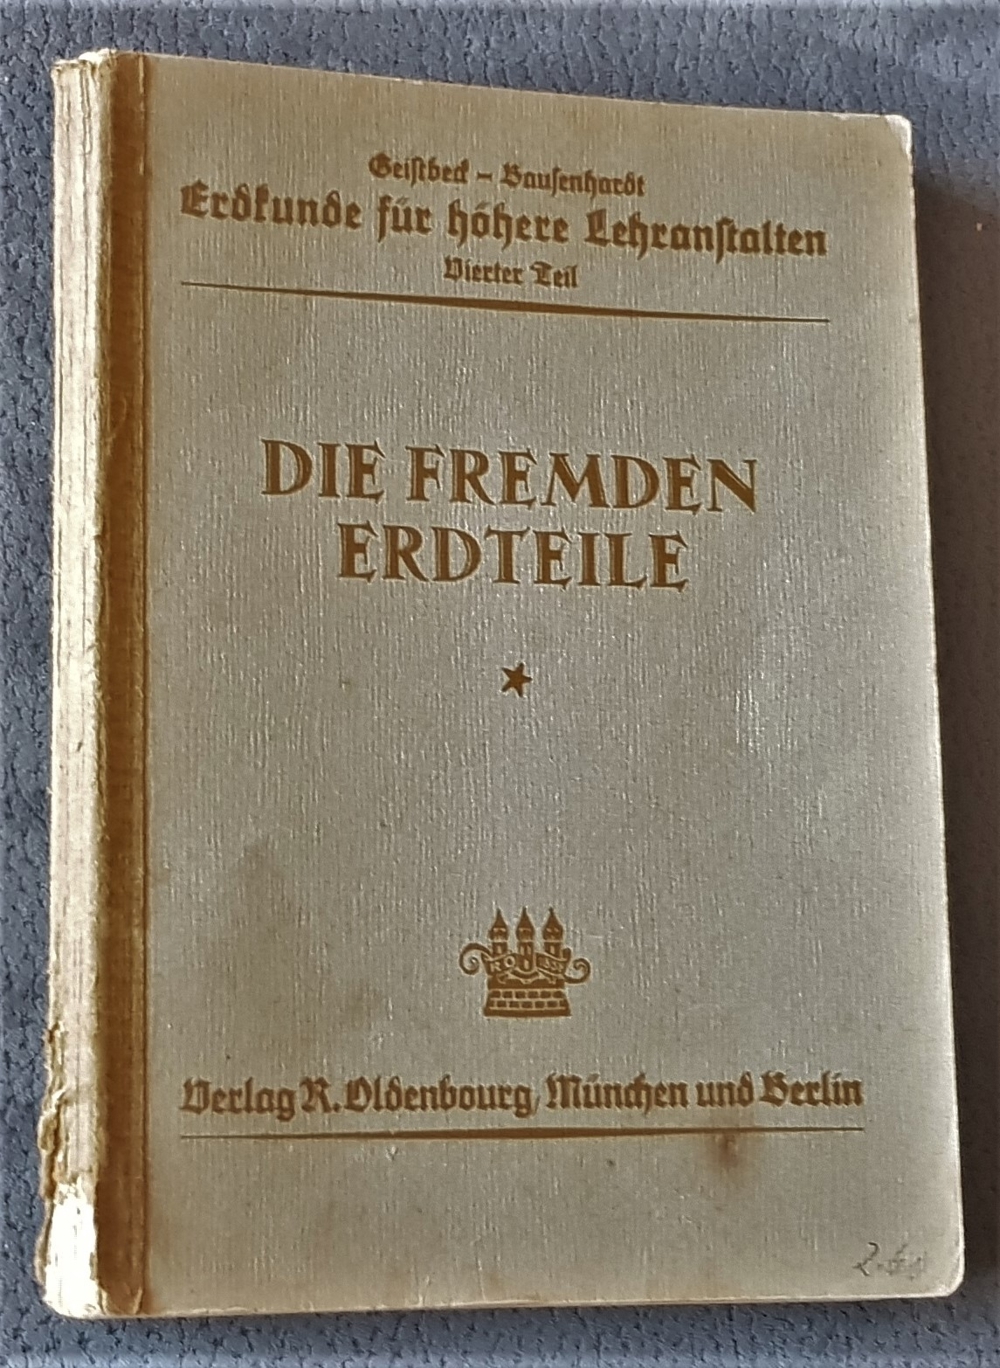 "Die fremden Erdteile" von Knielein & Löffler, "Erdkunde" 4.Teil